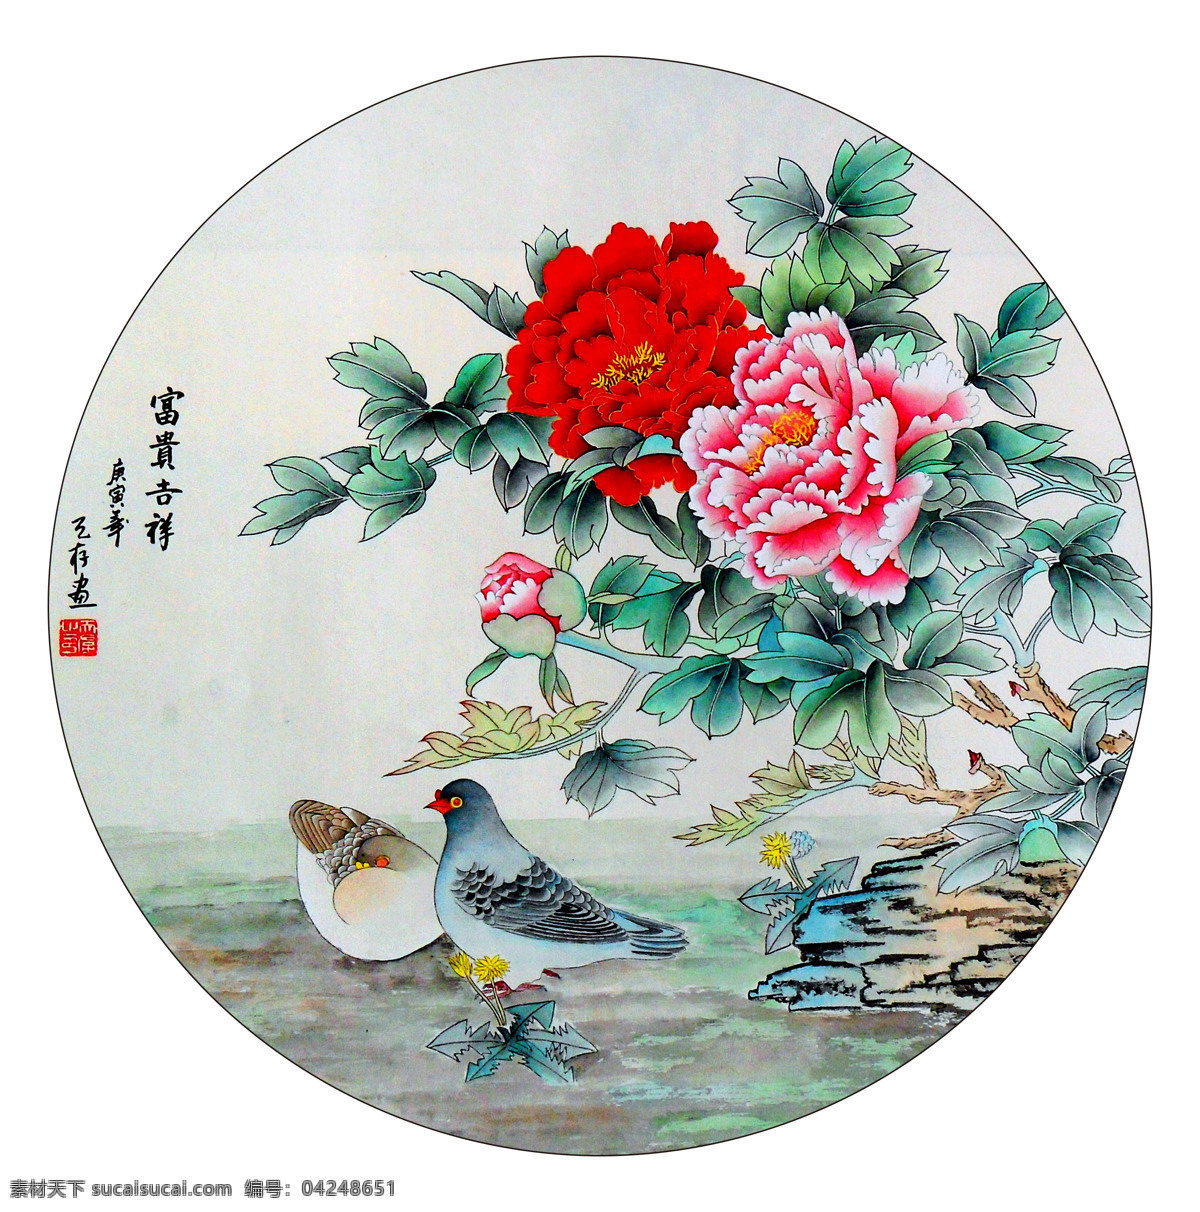 富贵吉祥 美术 中国画 工笔画 牡丹花 鸽子 国画艺术 国画集96 绘画书法 文化艺术